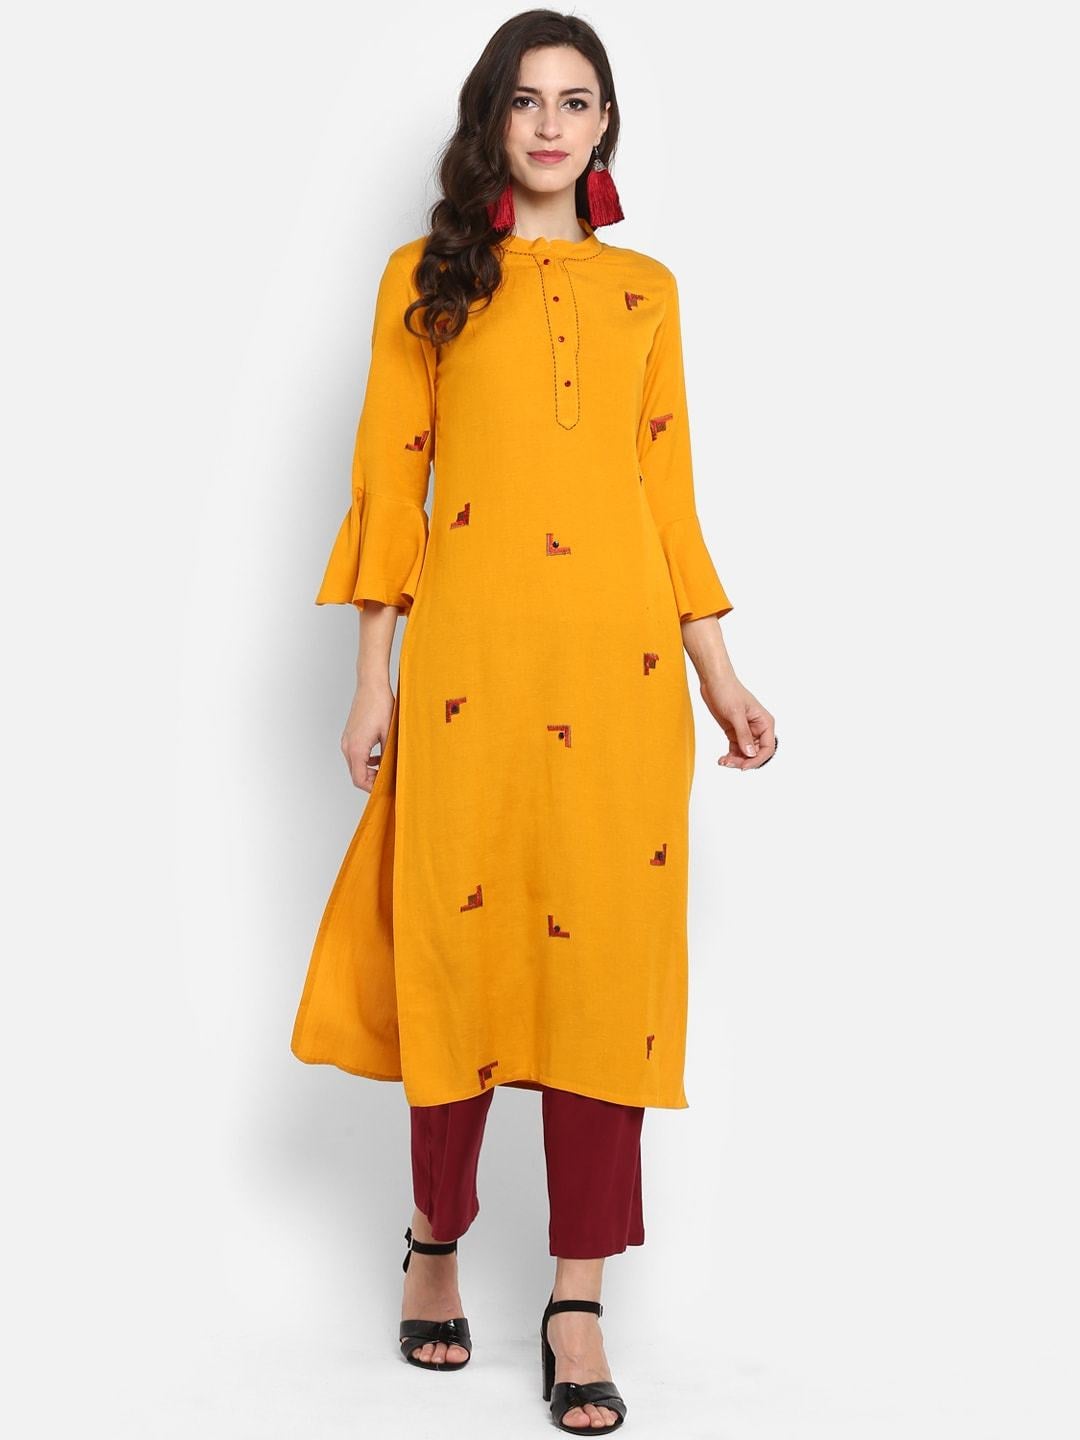 Women's Mustard Yellow Embroidered Straight Kurta - Meeranshi